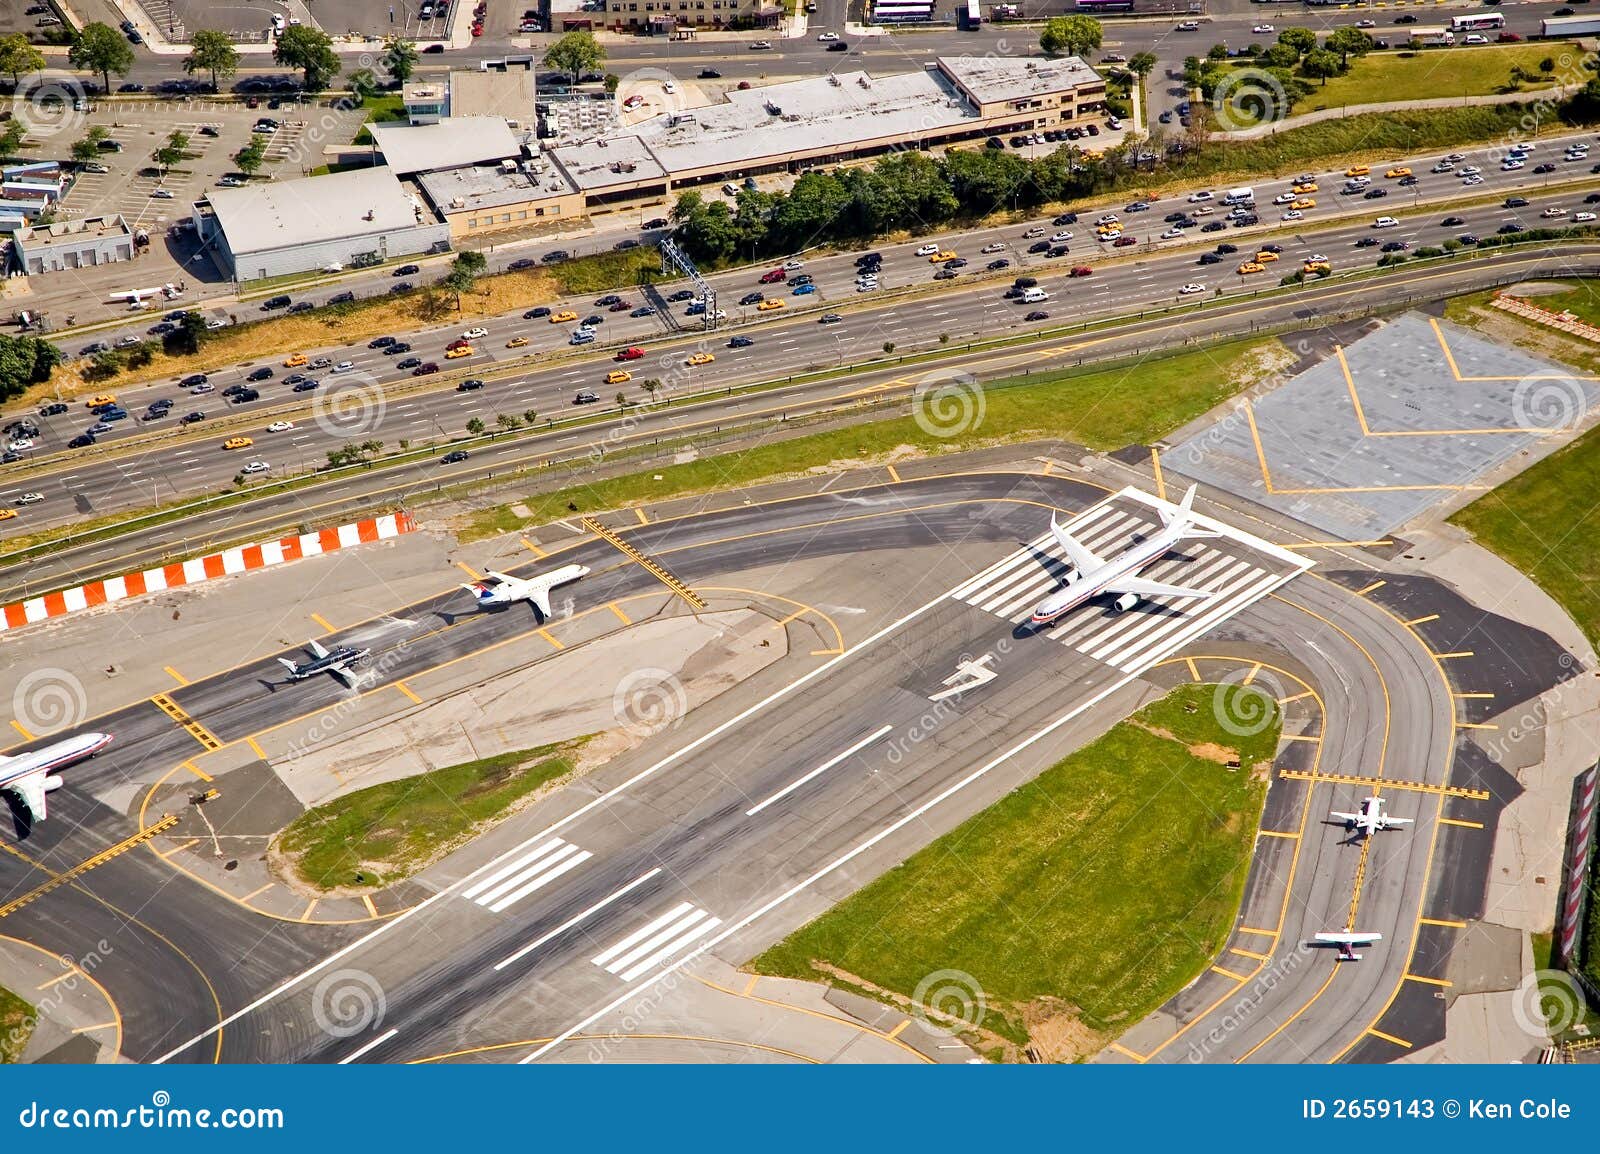 airport runway airplanes